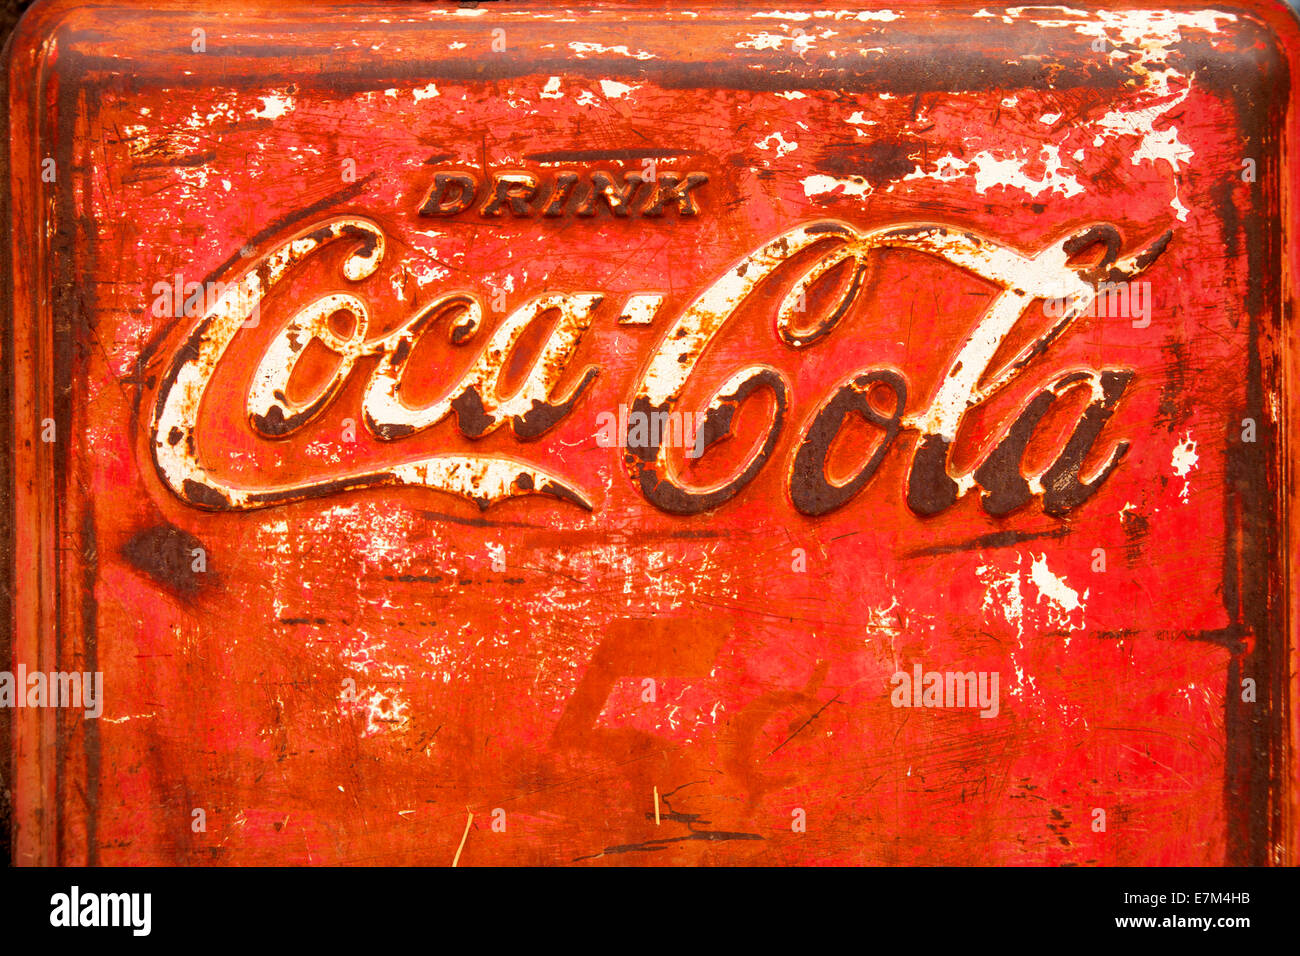 Logo de la marque Coca-Cola apparaît dans Spencerian script sur un applicateur de rouillé. Banque D'Images